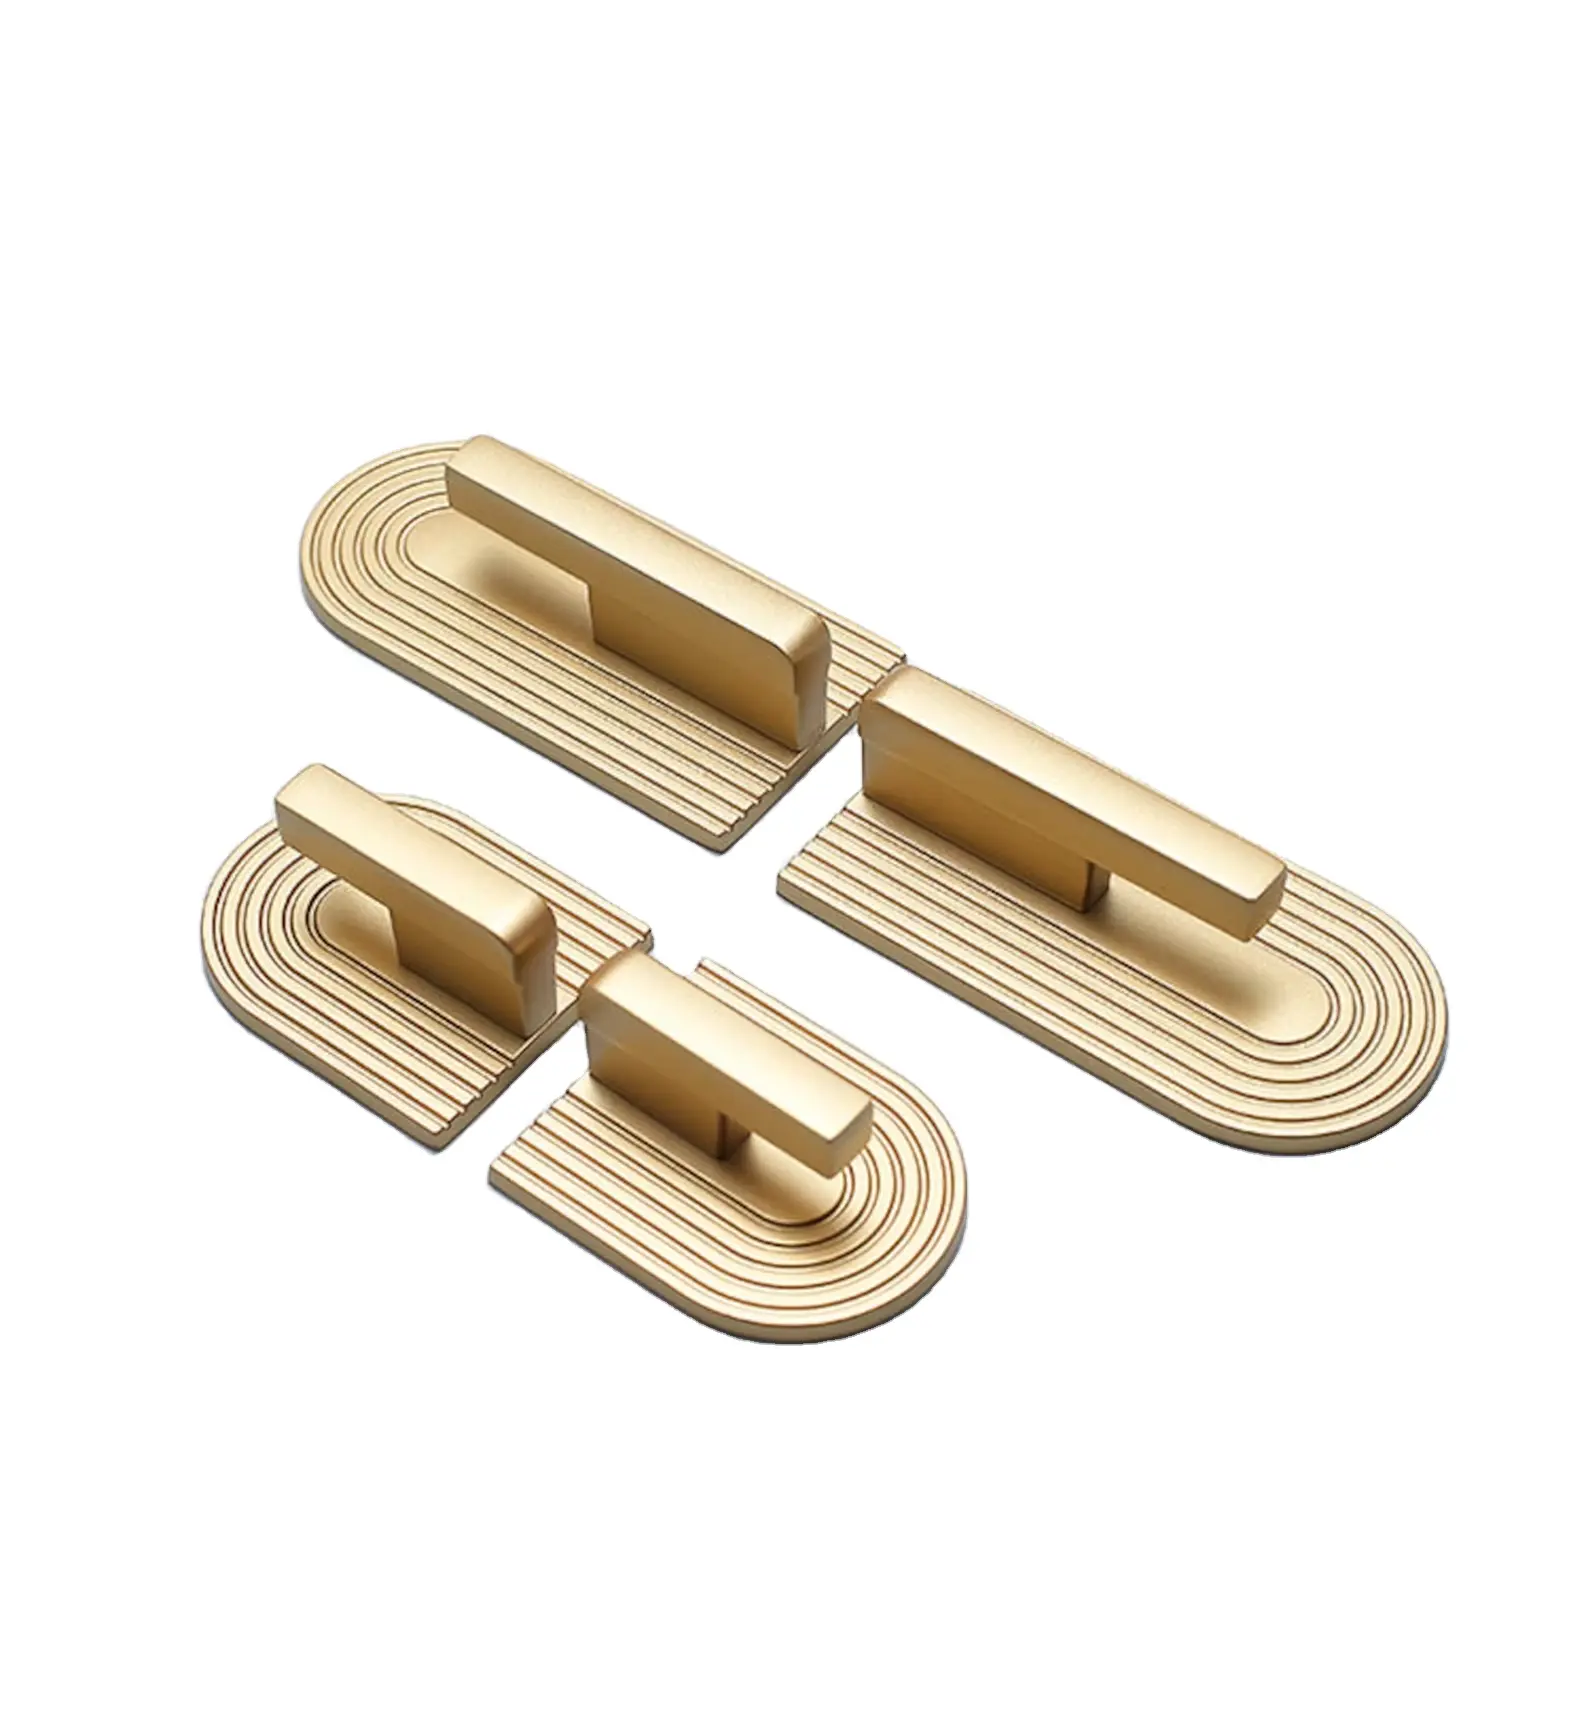 Golden Cupboard Handles/Modern Minimalist Cabinet Door Knobs/Brass Furniture Handles Modern Knobs & Pulls Brass Cabinet pulls